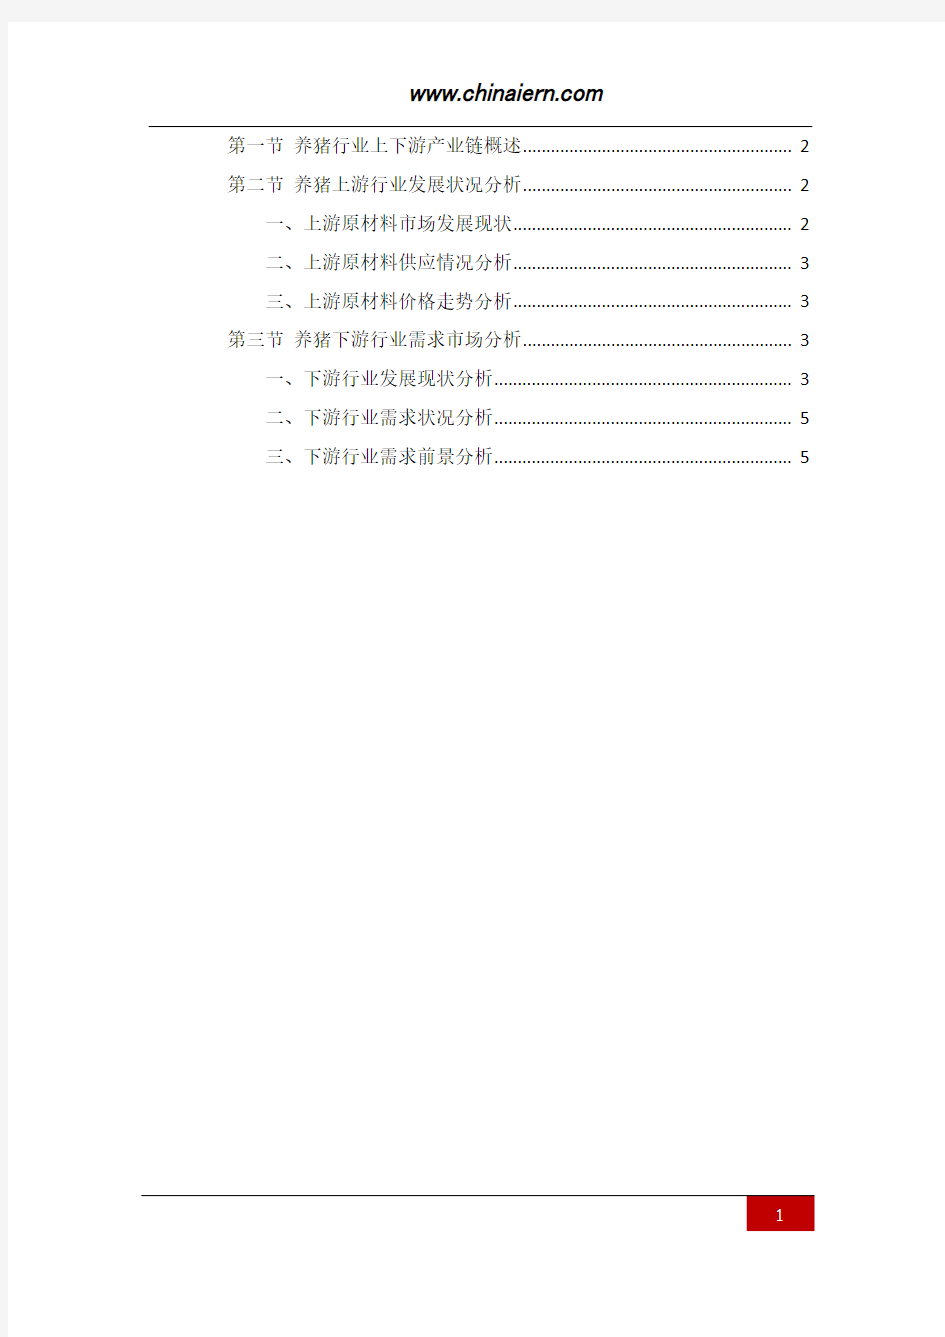 中国养猪行业上下游产业链分析(上海环盟)